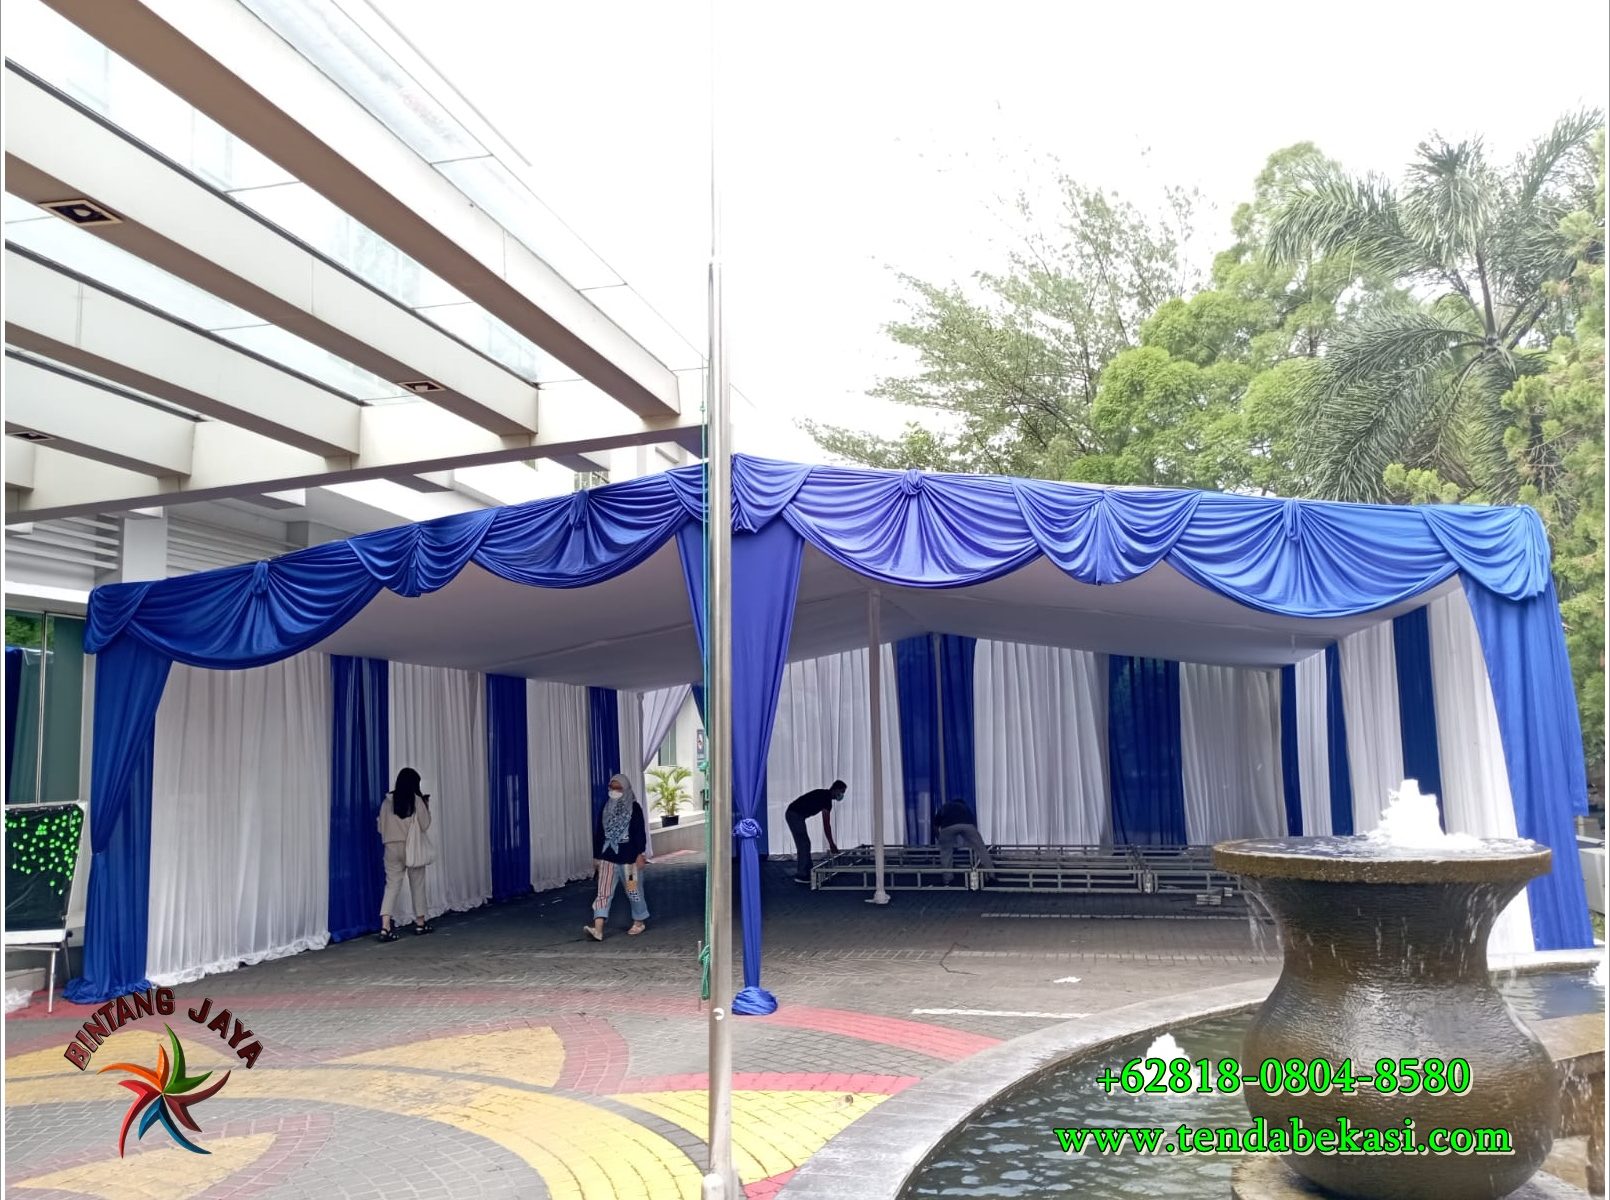 Sewa Tenda Untuk Kebutuhan Upacara 17 Agustus Di Jakarta